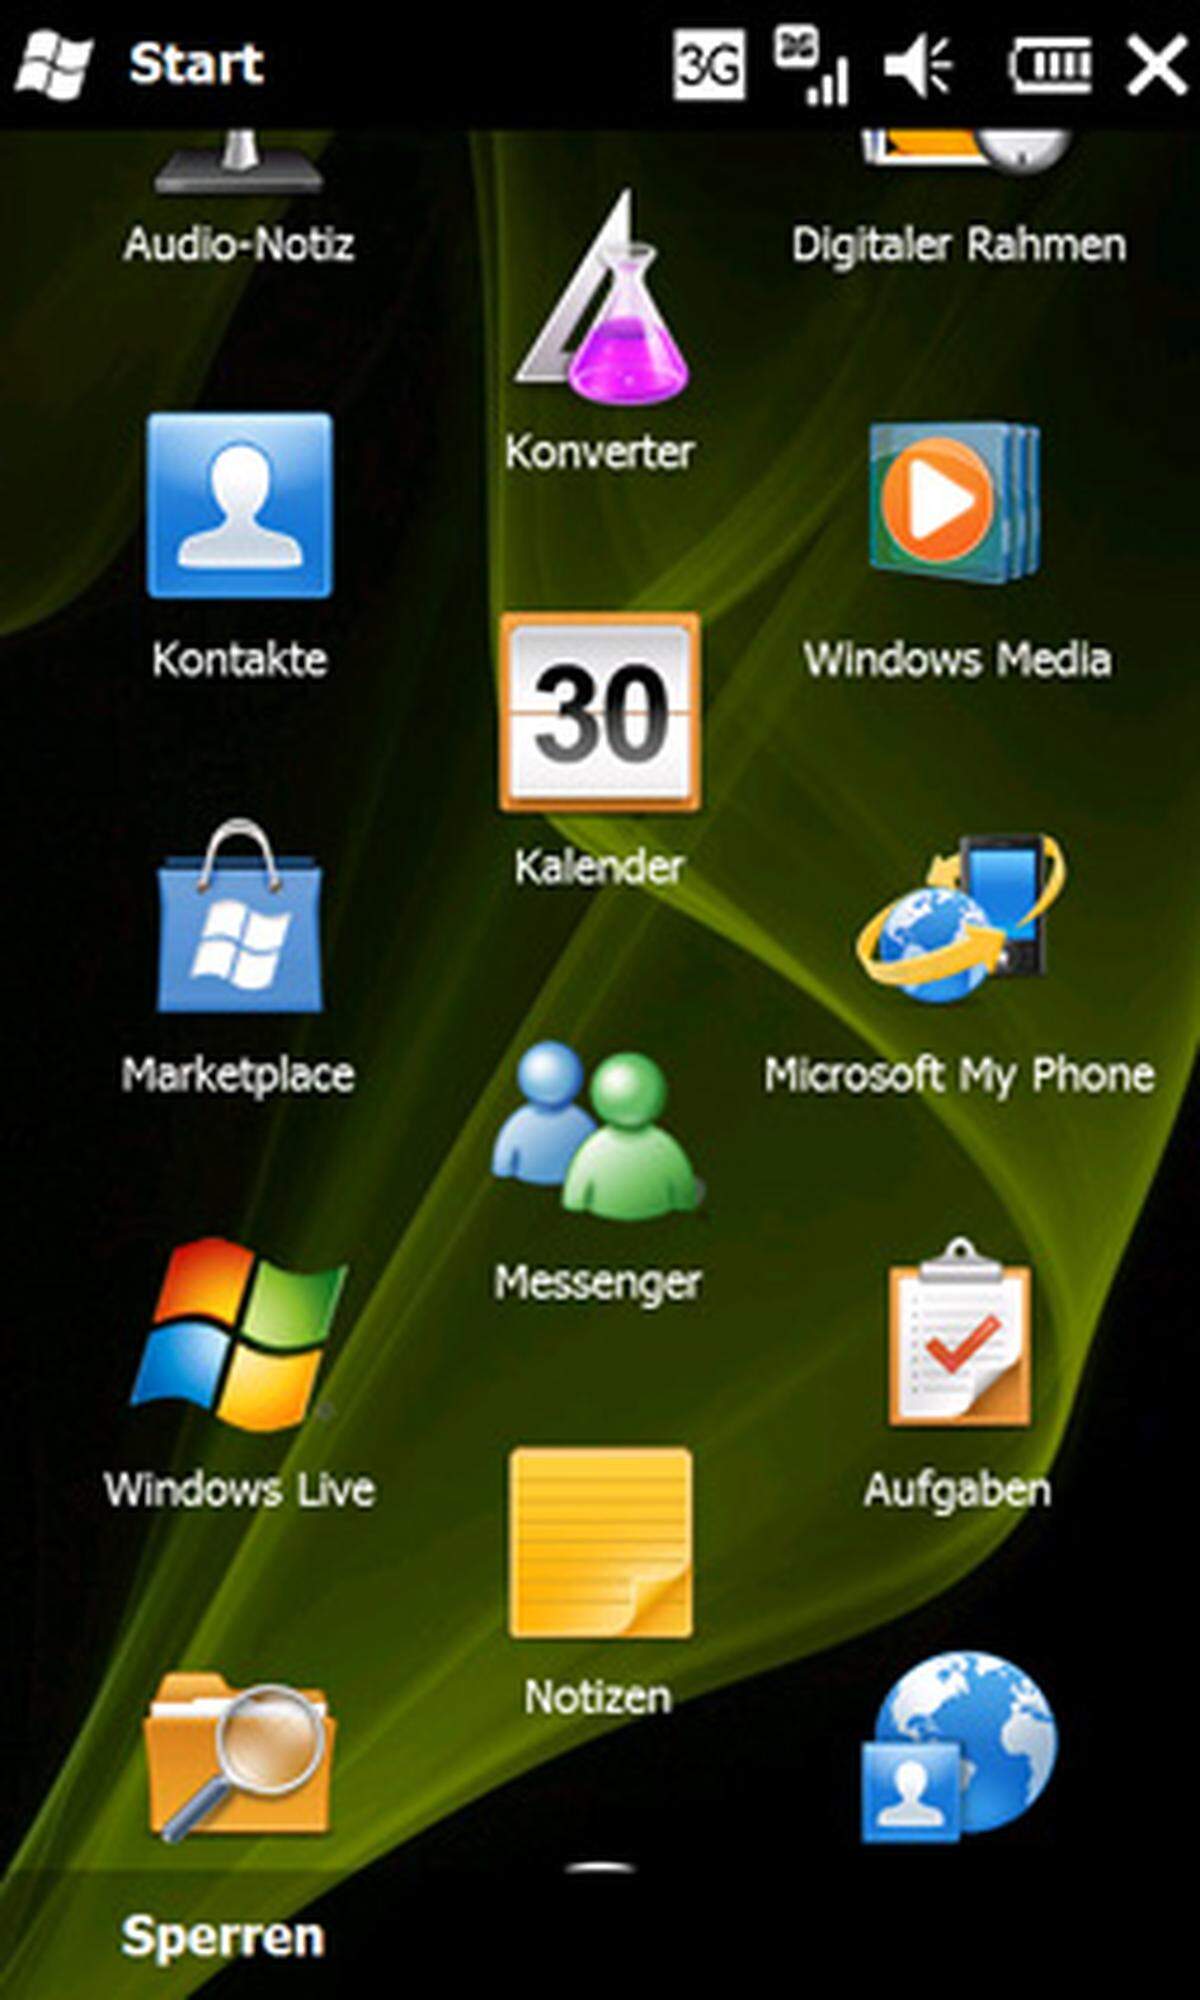 Mit Windows Mobile 6.5 hat Microsoft versucht, sein mobiles Betriebssystem auf den neuesten Stand zu bringen, um im Rennen mit Apples iPhone, Nokias Symbian, Googles Android und RIMs Blackberry nicht das Nachsehen zu haben. Untrennbar mit modernen "Smartphones" verbunden sind Zusatzanwendungen, die über einen Shop direkt am Handy erworben und installiert werden können. Der "App Store" ist einer der wichtigsten Erfolgsfaktoren des iPhones und auch die übrigen Rivalen haben eigene Angebote gestartet. Microsoft ist mit seinem "Marketplace", der nur unter Windows Mobile 6.5 verfügbar ist, also Nachzügler. DiePresse.com hat sich angesehen, ob sich die lange Wartezeit gelohnt hat.